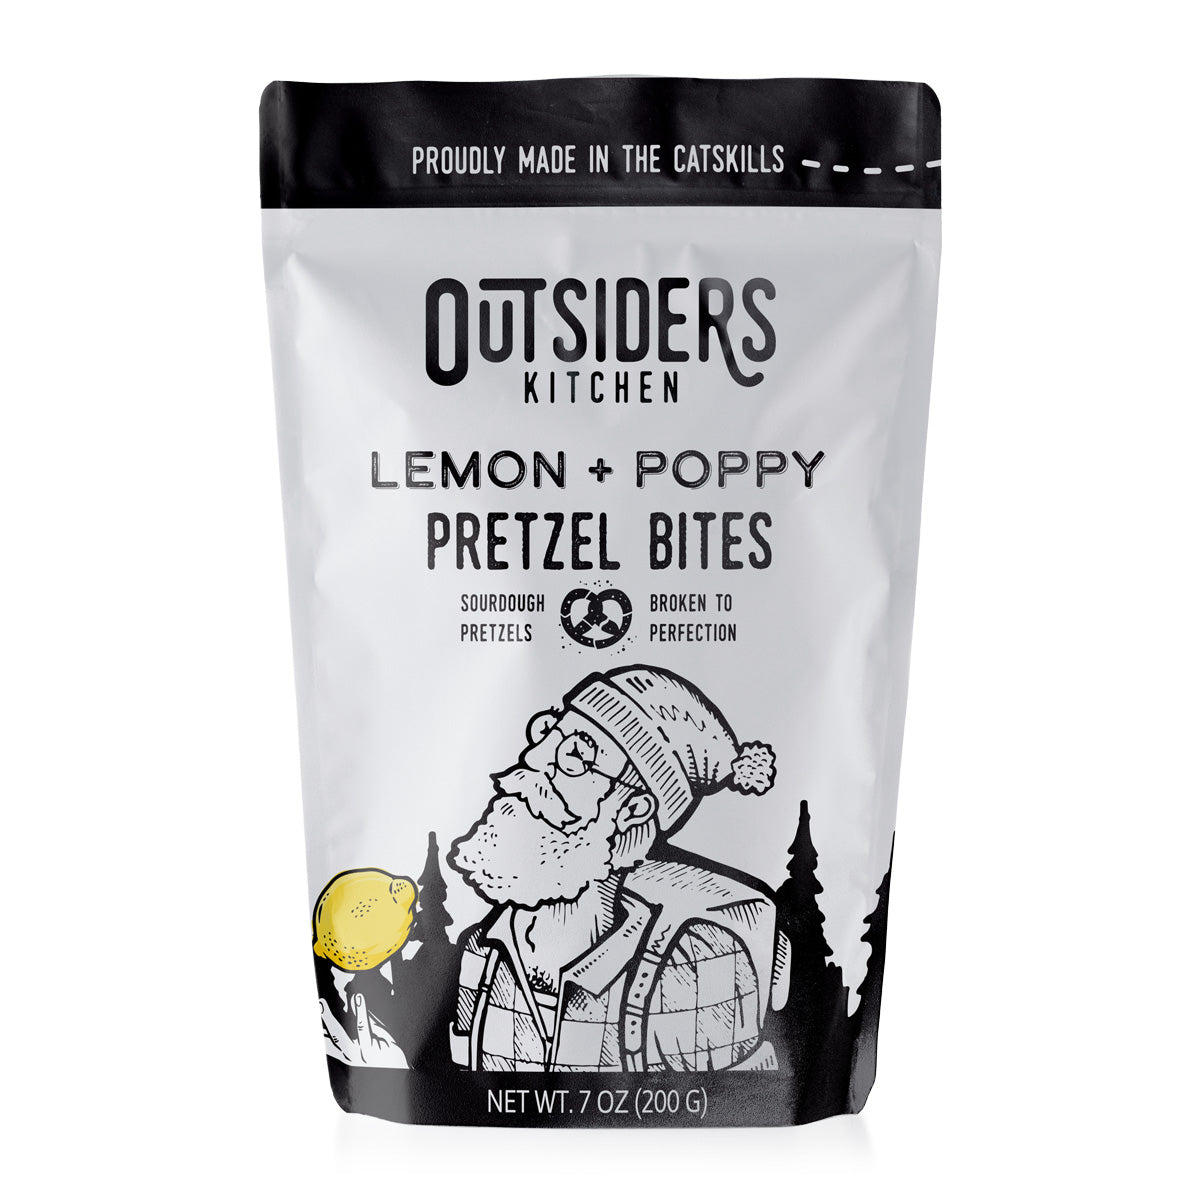 Lemon + Poppy Pretzel Bites